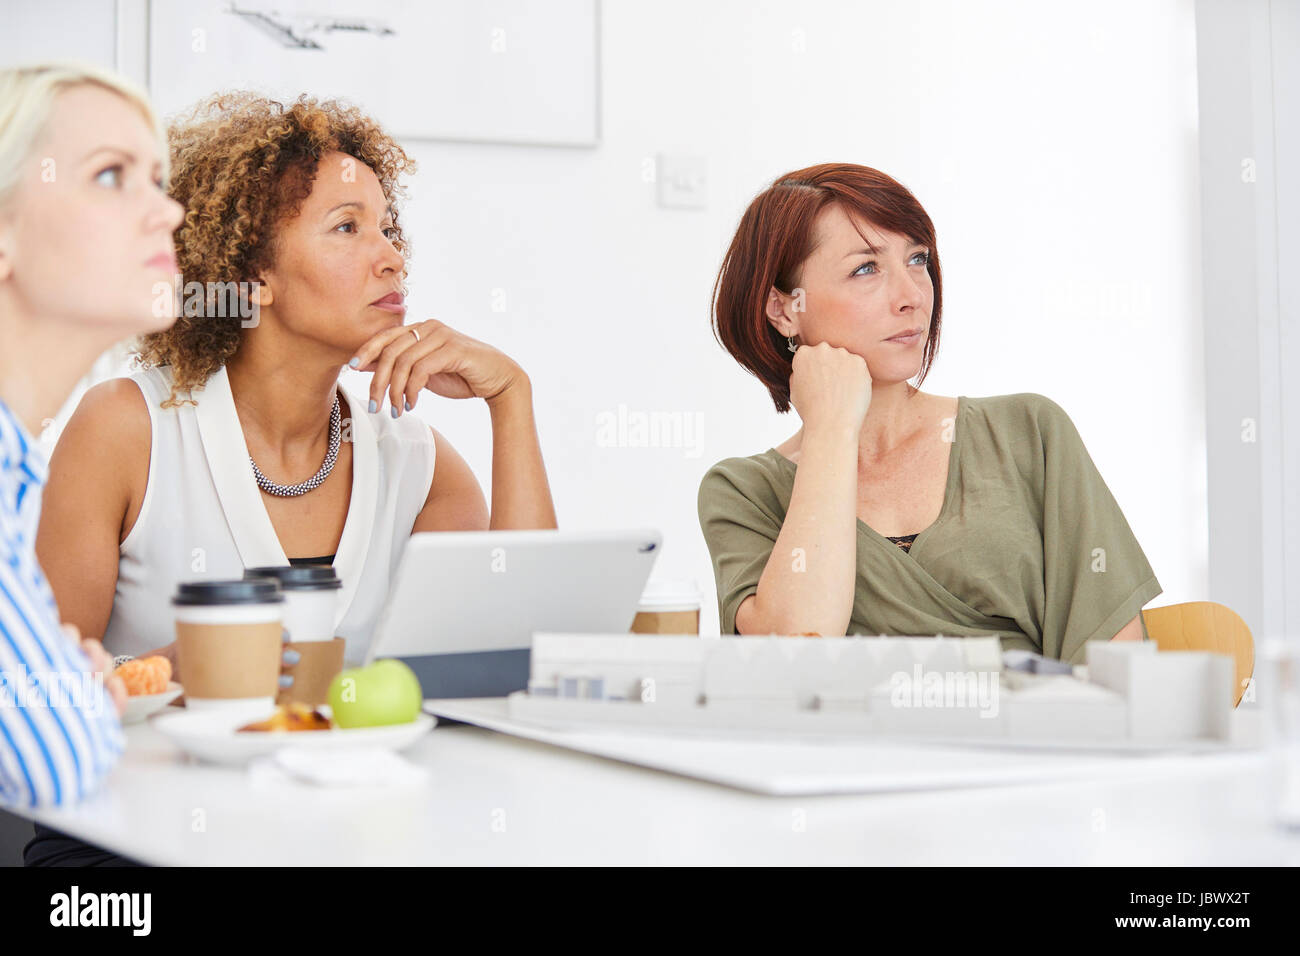 L'écoute de l'équipe architecte femelle au cours de réunion Banque D'Images